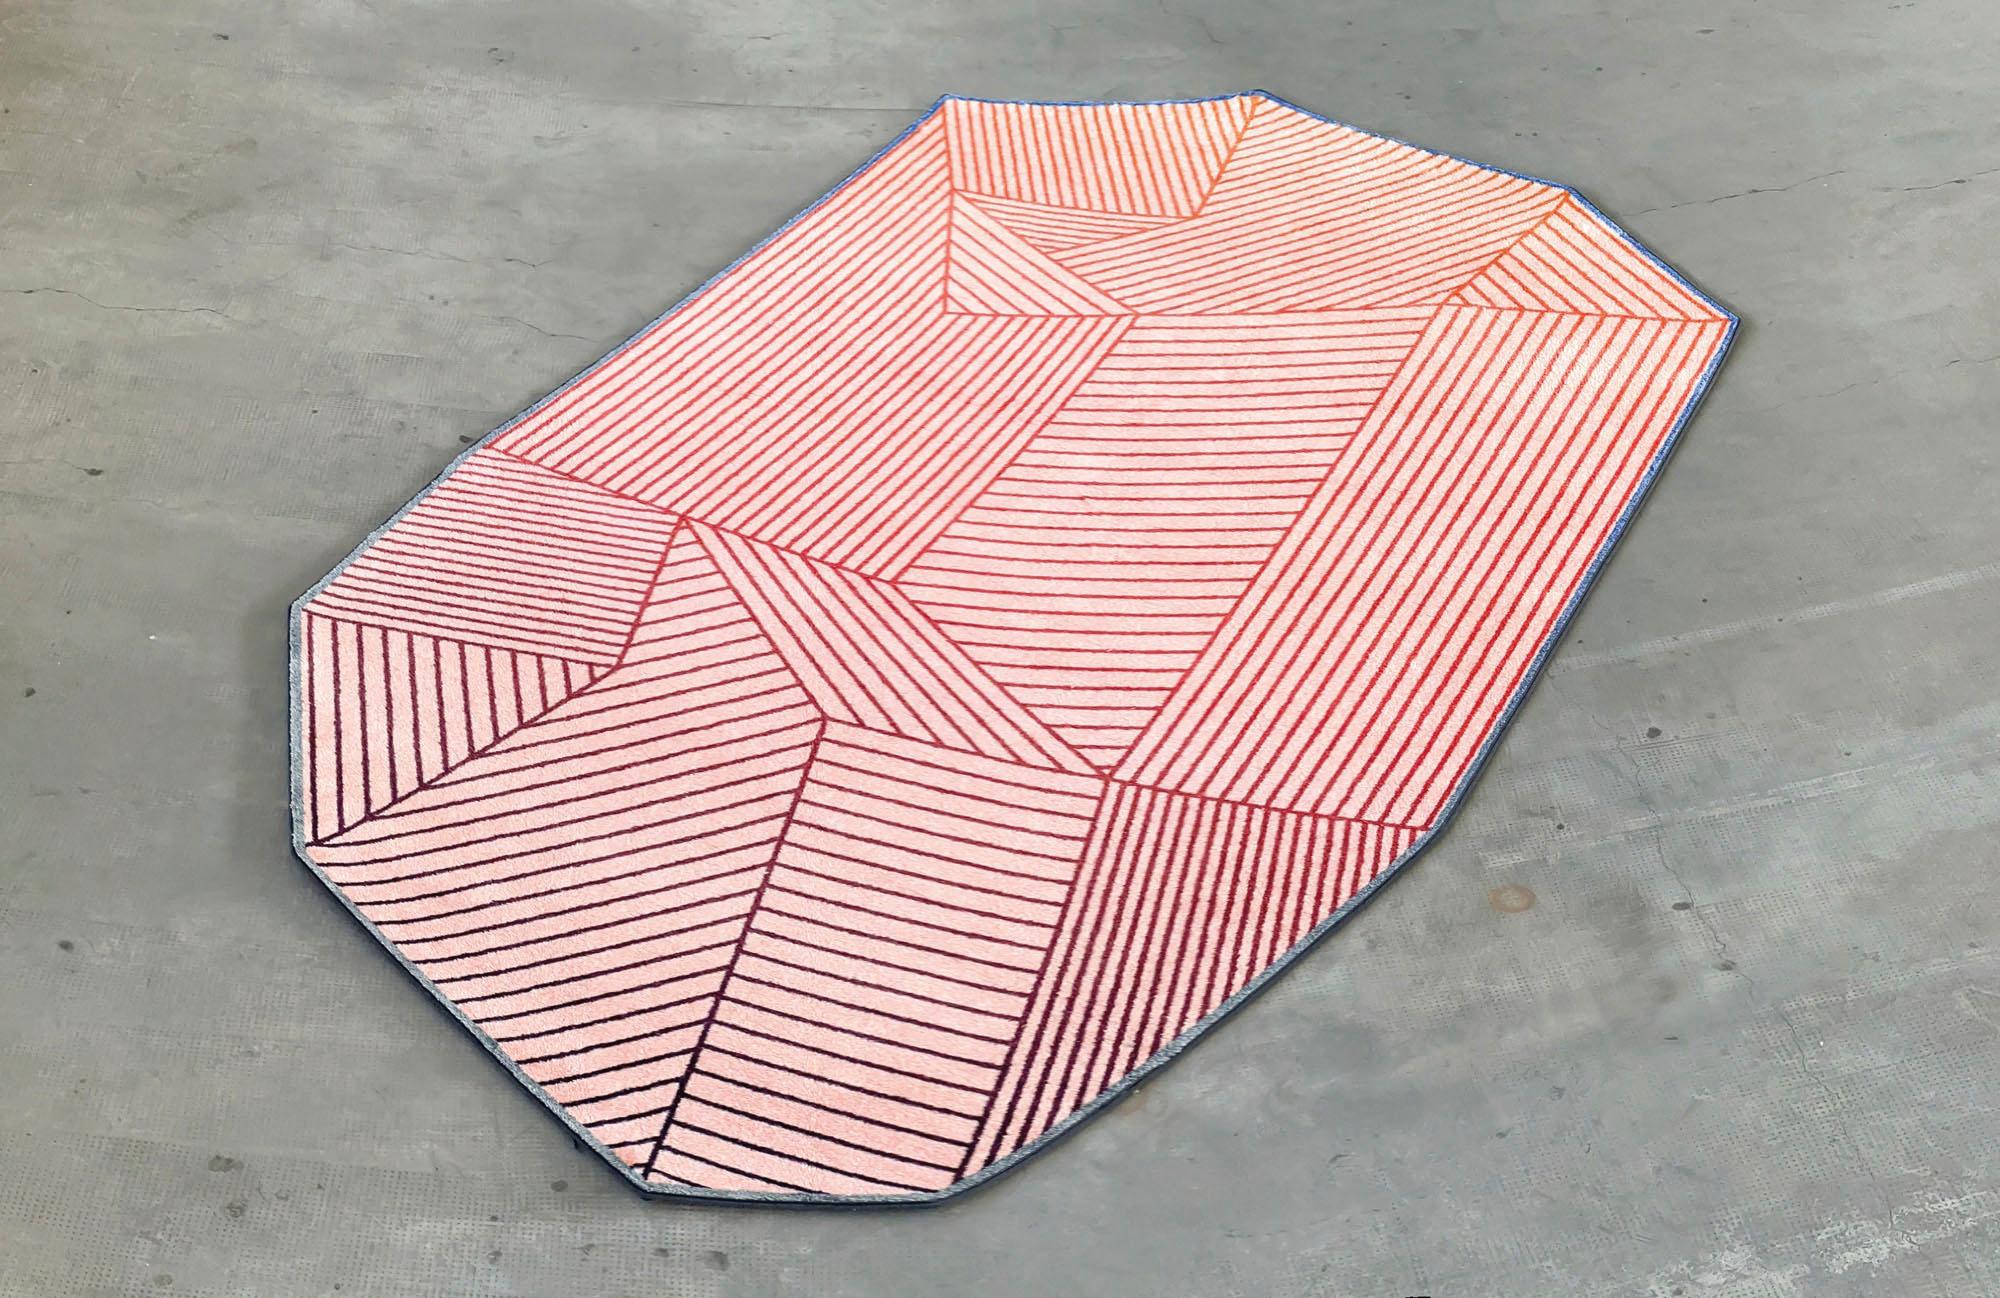 AlTappeto est la nouvelle collection de tapis conçue par Enrico Girotti pour lapiegaWD.
De minuscules tirets qui se fondent dans des couleurs dégradées, remplissent toute la forme du tapis d'une forme inhabituelle.
Les dimensions d'AlTappeto sont de